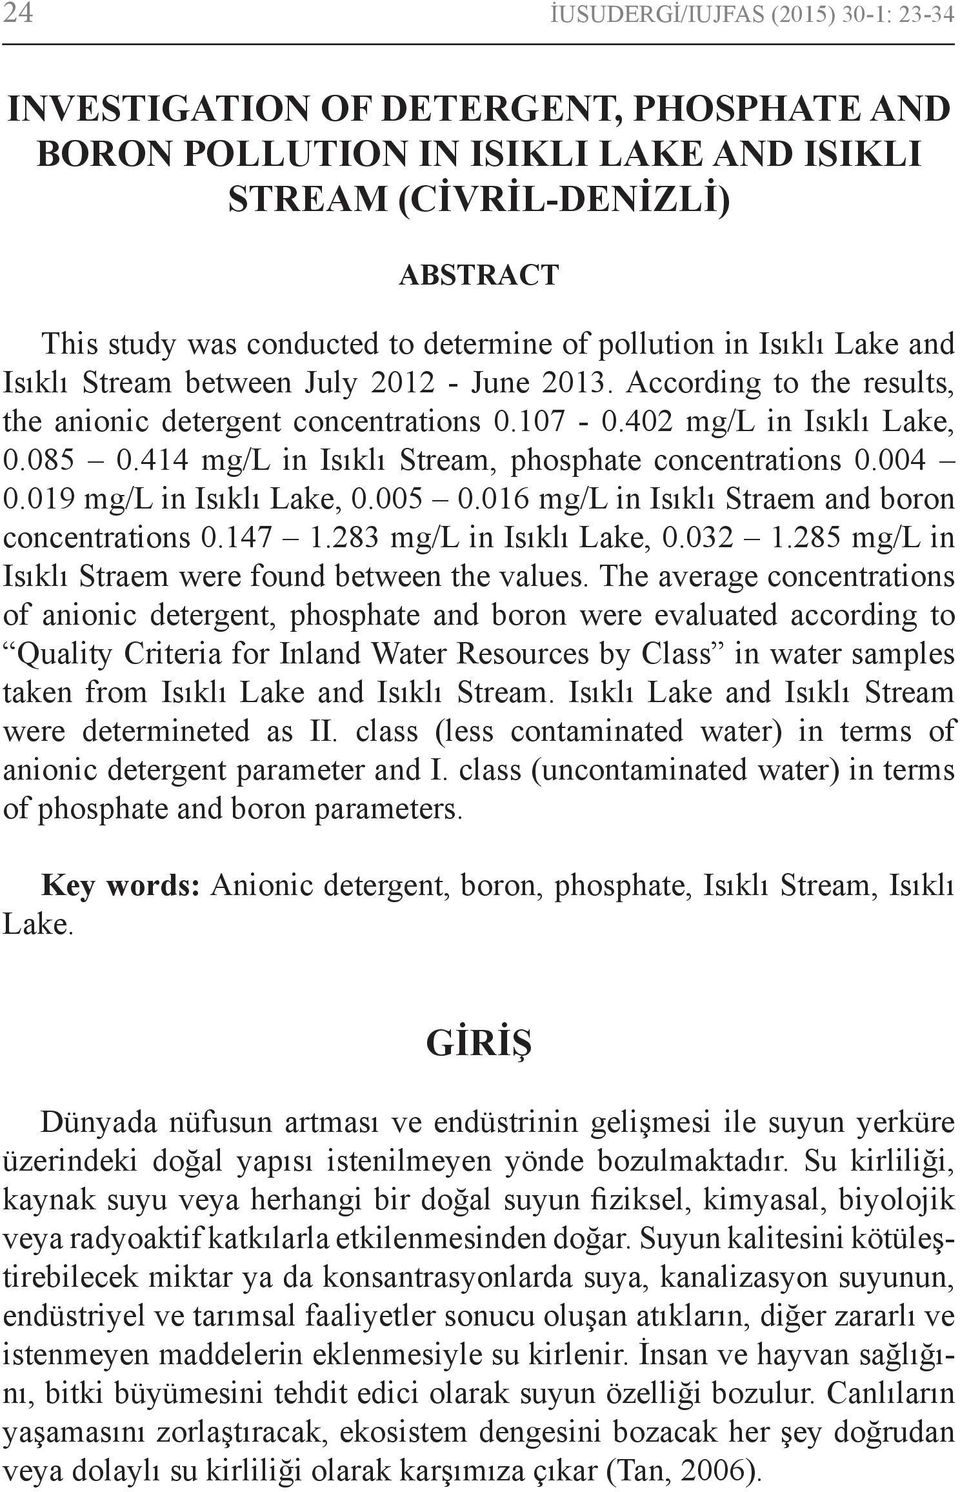 414 mg/l in Isıklı Stream, phosphate concentrations 0.004 0.019 mg/l in Isıklı Lake, 0.005 0.016 mg/l in Isıklı Straem and boron concentrations 0.147 1.283 mg/l in Isıklı Lake, 0.032 1.